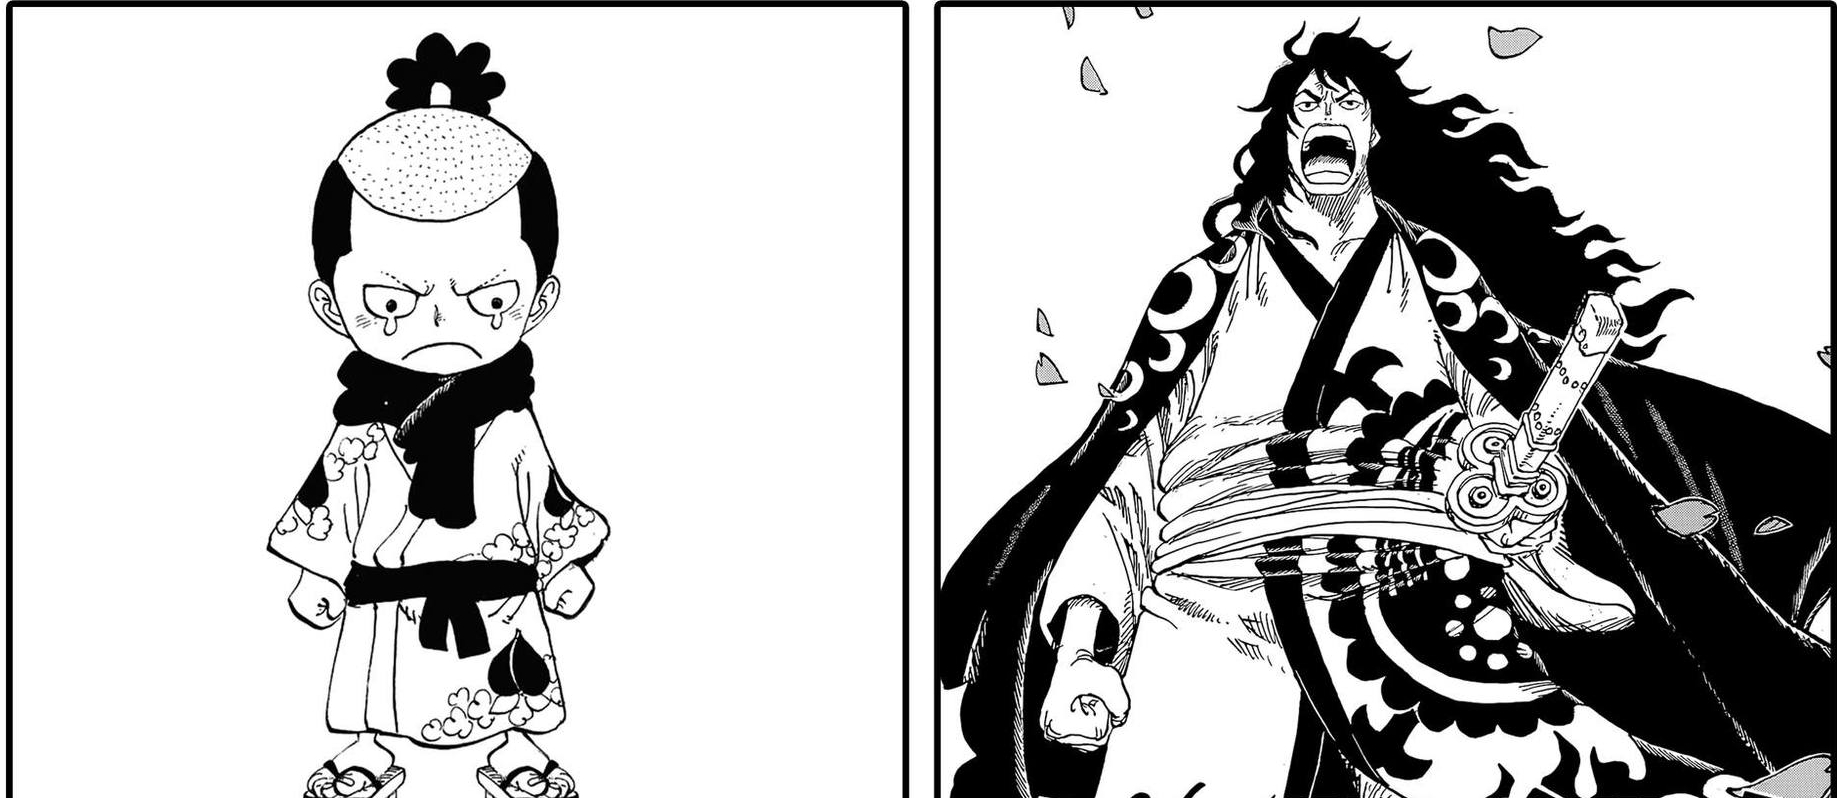 Momonosuke, một nhân vật quan trọng trong series One Piece, sẽ trở thành shogun vĩ đại trong tương lai. Top 7 yếu tố sẽ biến cậu bé trở thành một nhân vật quan trọng trong tương lai của vương quốc Wano đã được tiết lộ. Hãy cùng chờ đón xem Momonosuke sẽ làm gì để trở thành một vị shogun vĩ đại trong One Piece.